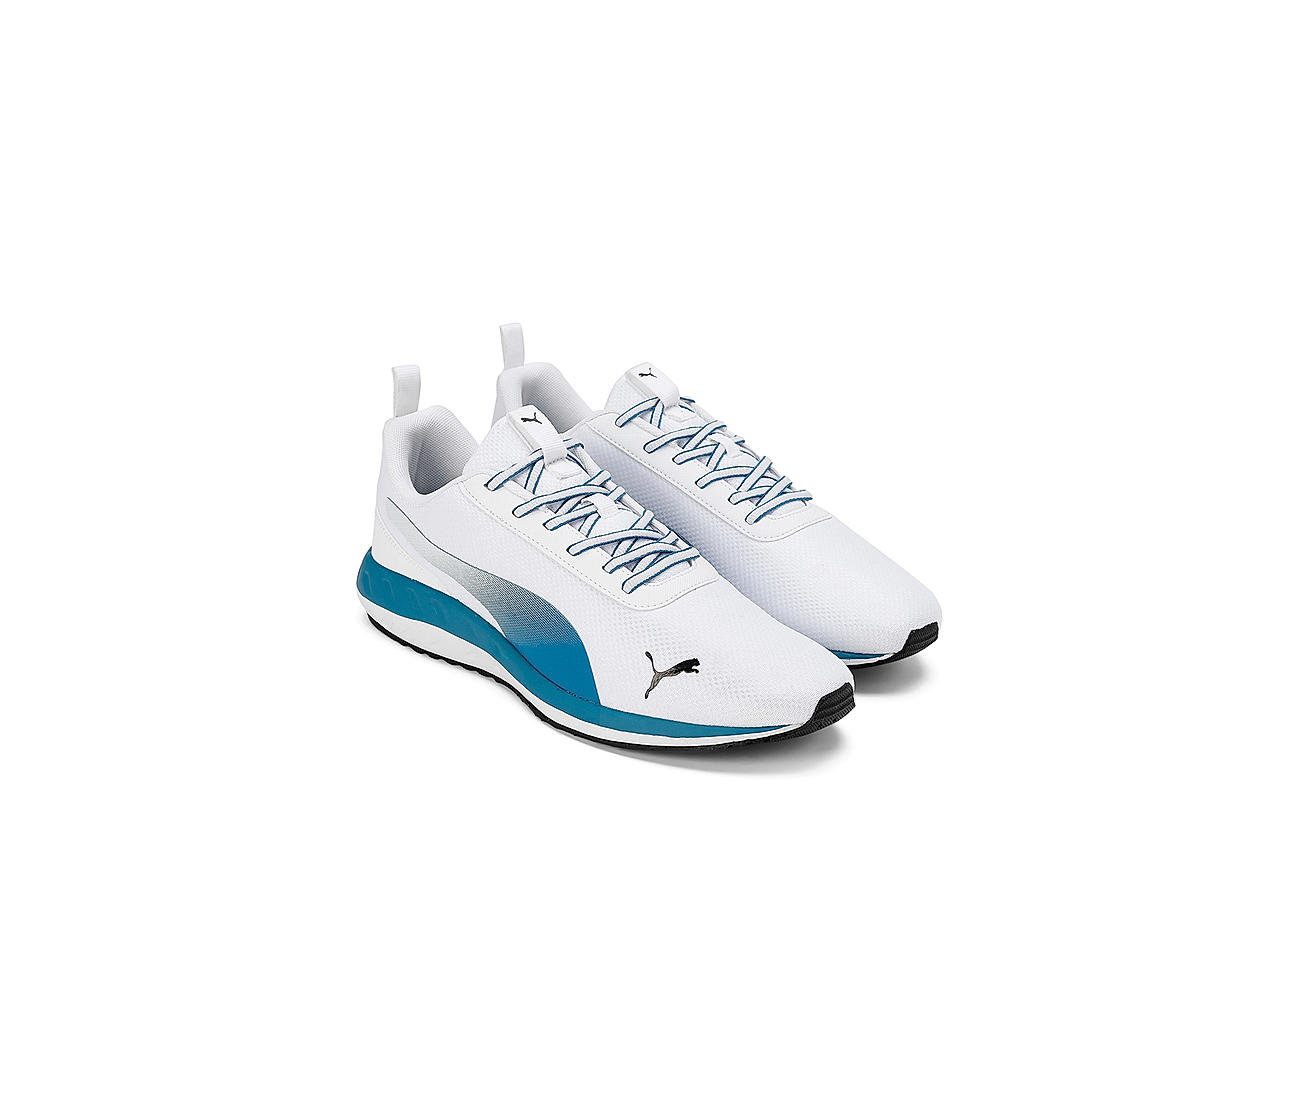 Buy Puma Mens Smooth Walk Black-White Running Shoe - 6UK (37851302) at